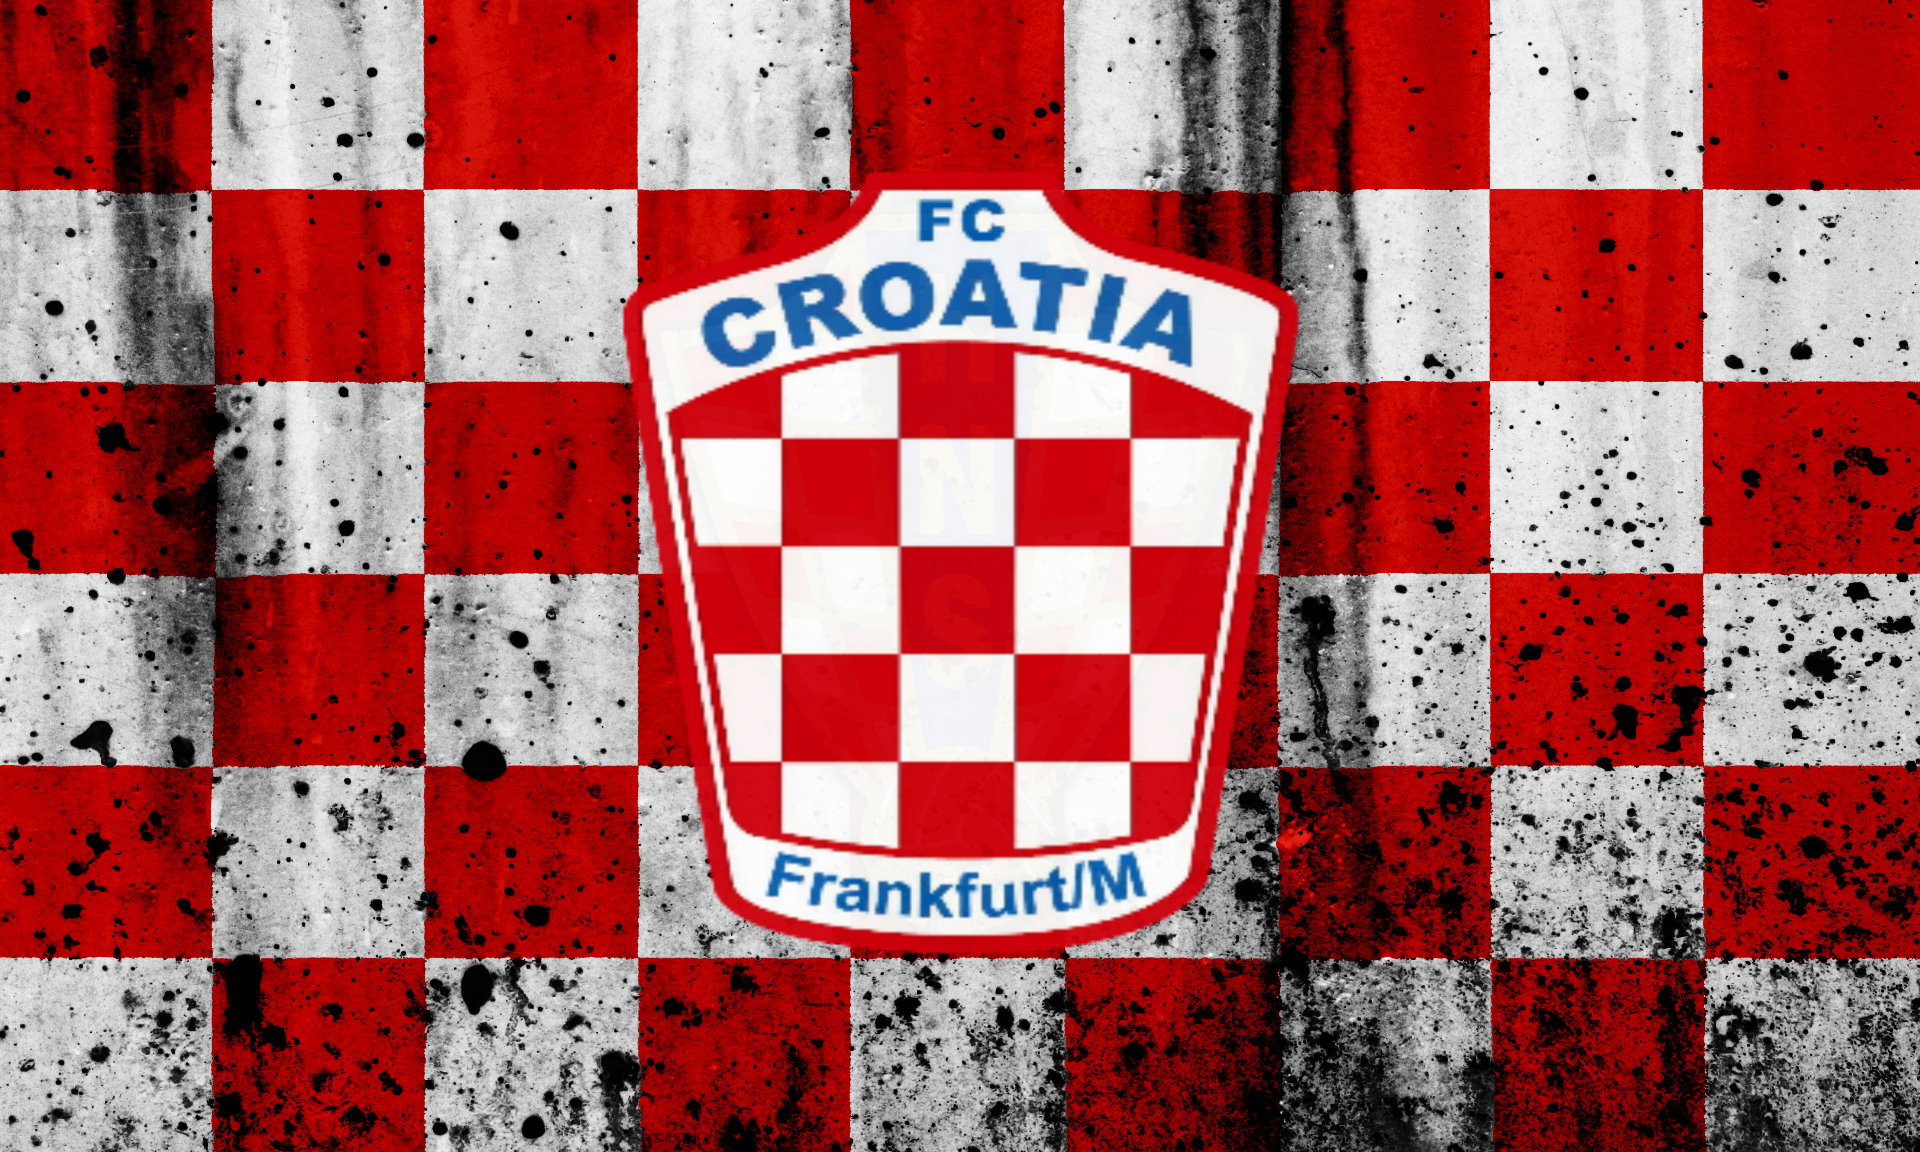 (c) Fc-croatia-frankfurt.de